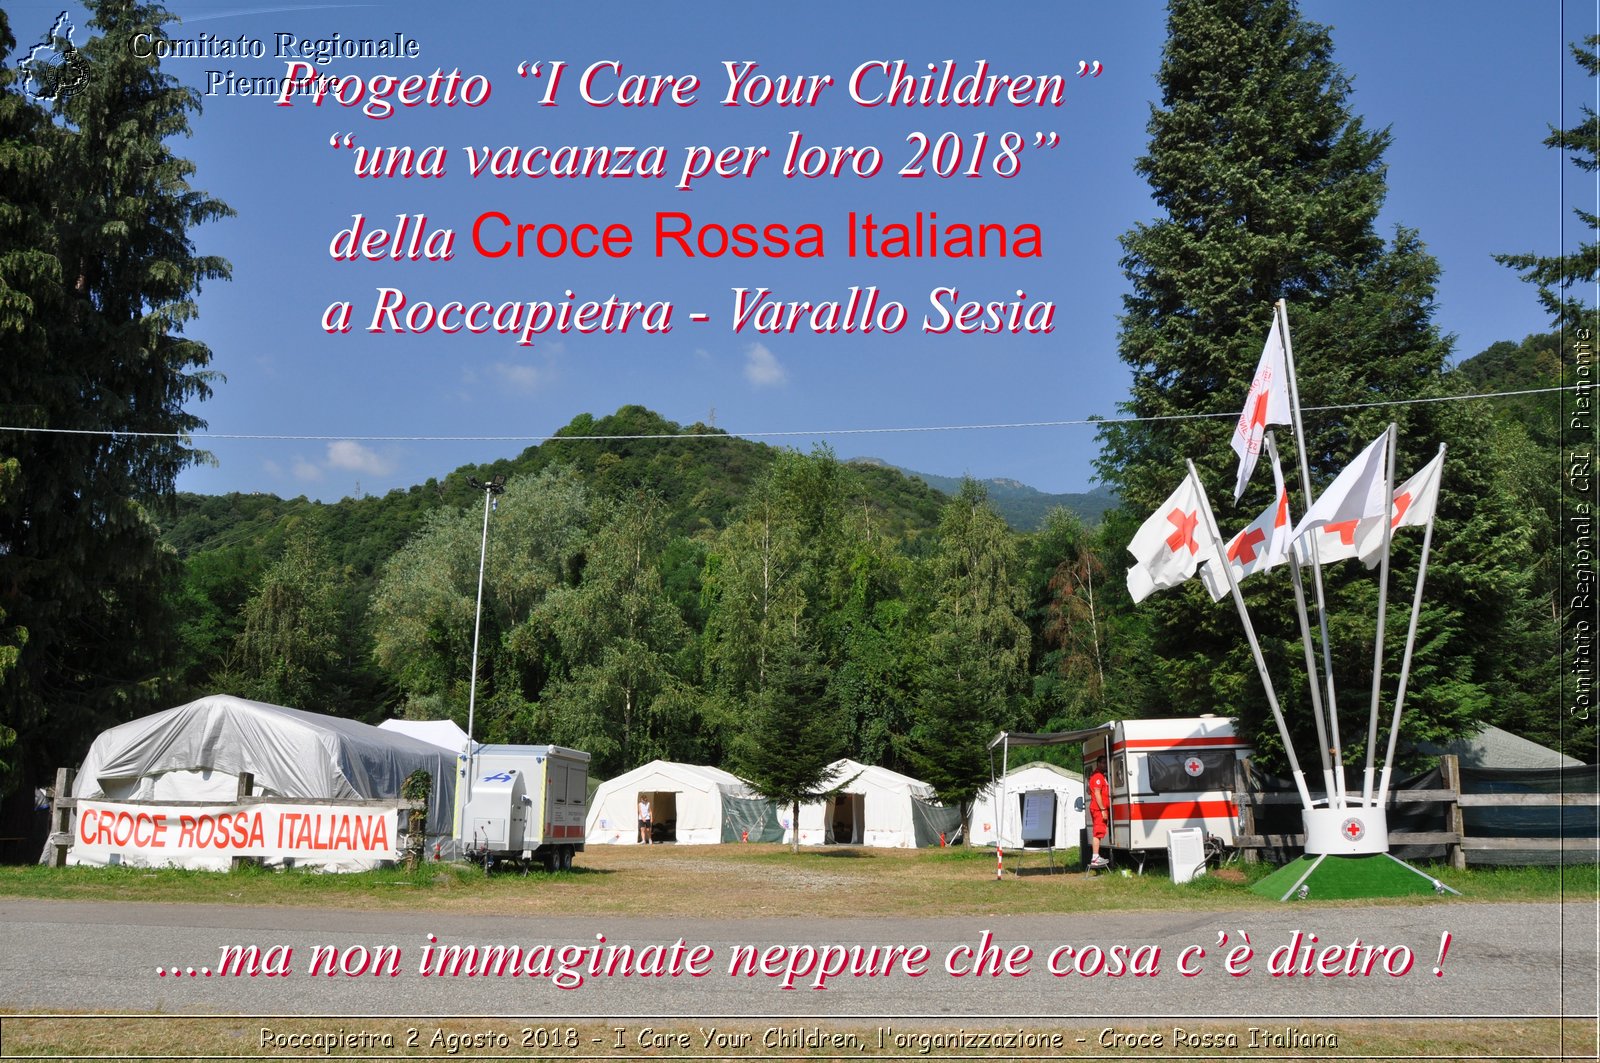 Roccapietra 2 Agosto 2018 - I Care Your Children, l'organizzazione - Croce Rossa Italiana- Comitato Regionale del Piemonte